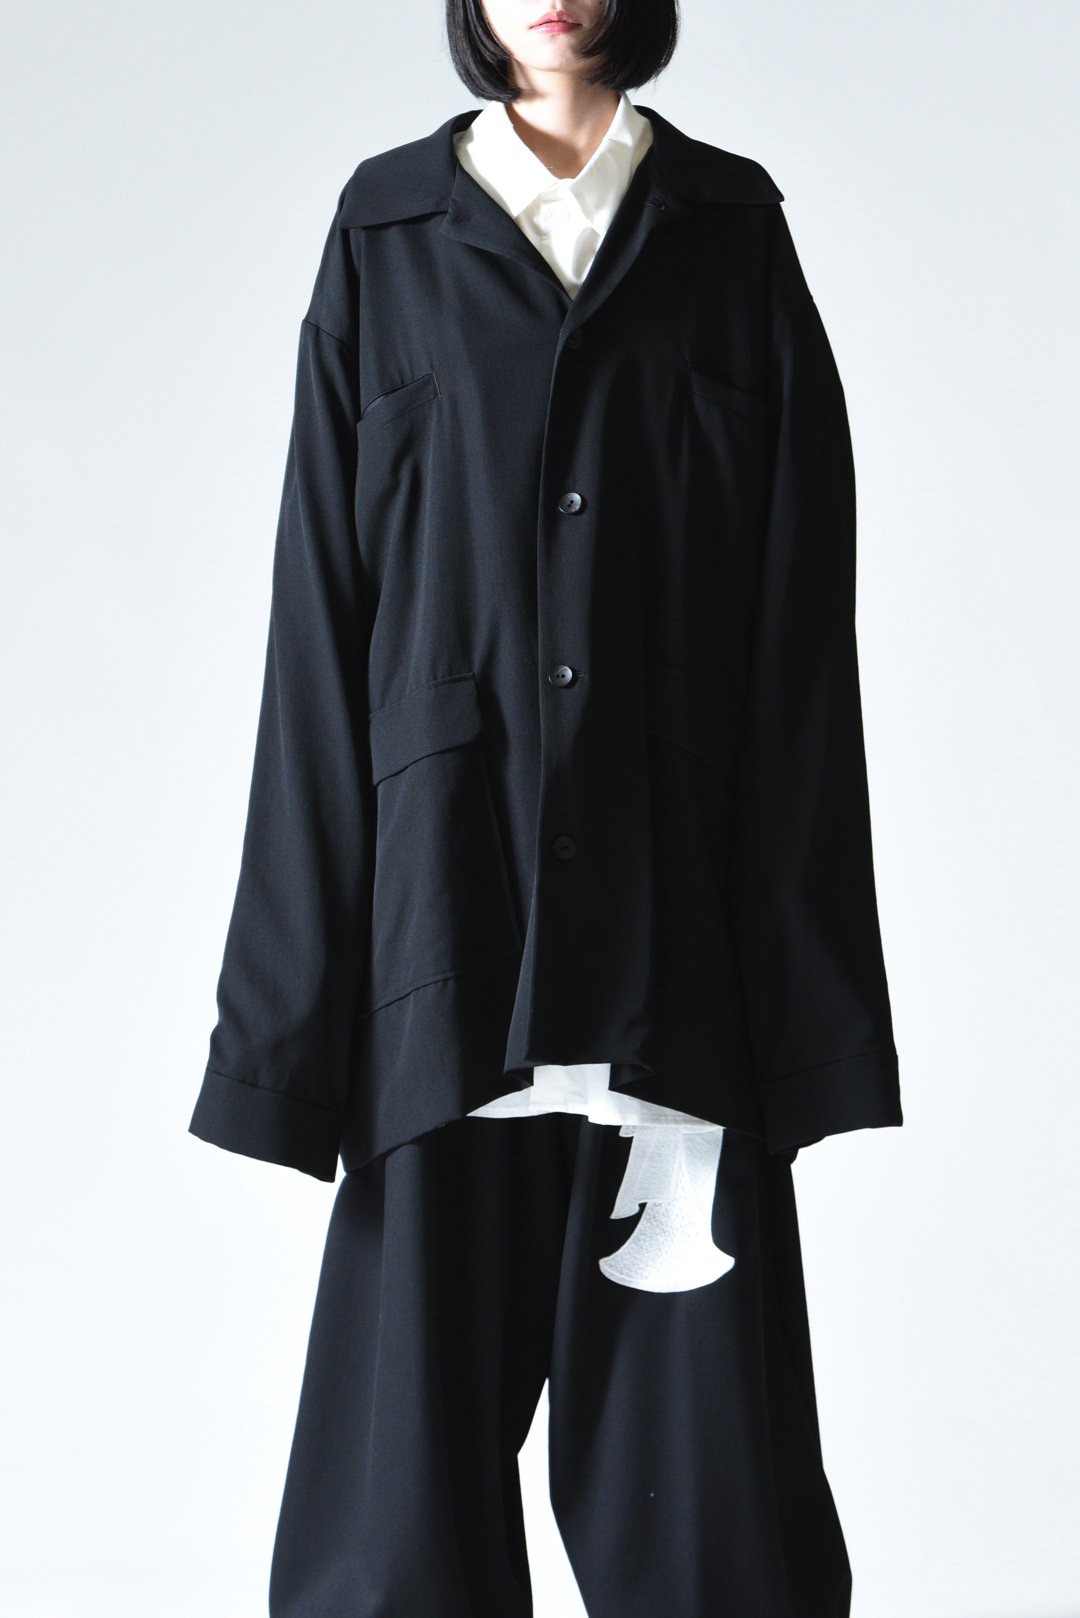 BISHOOL Wool Gabardine Huge Jacket - BISHOOL,Edwina Horl,My